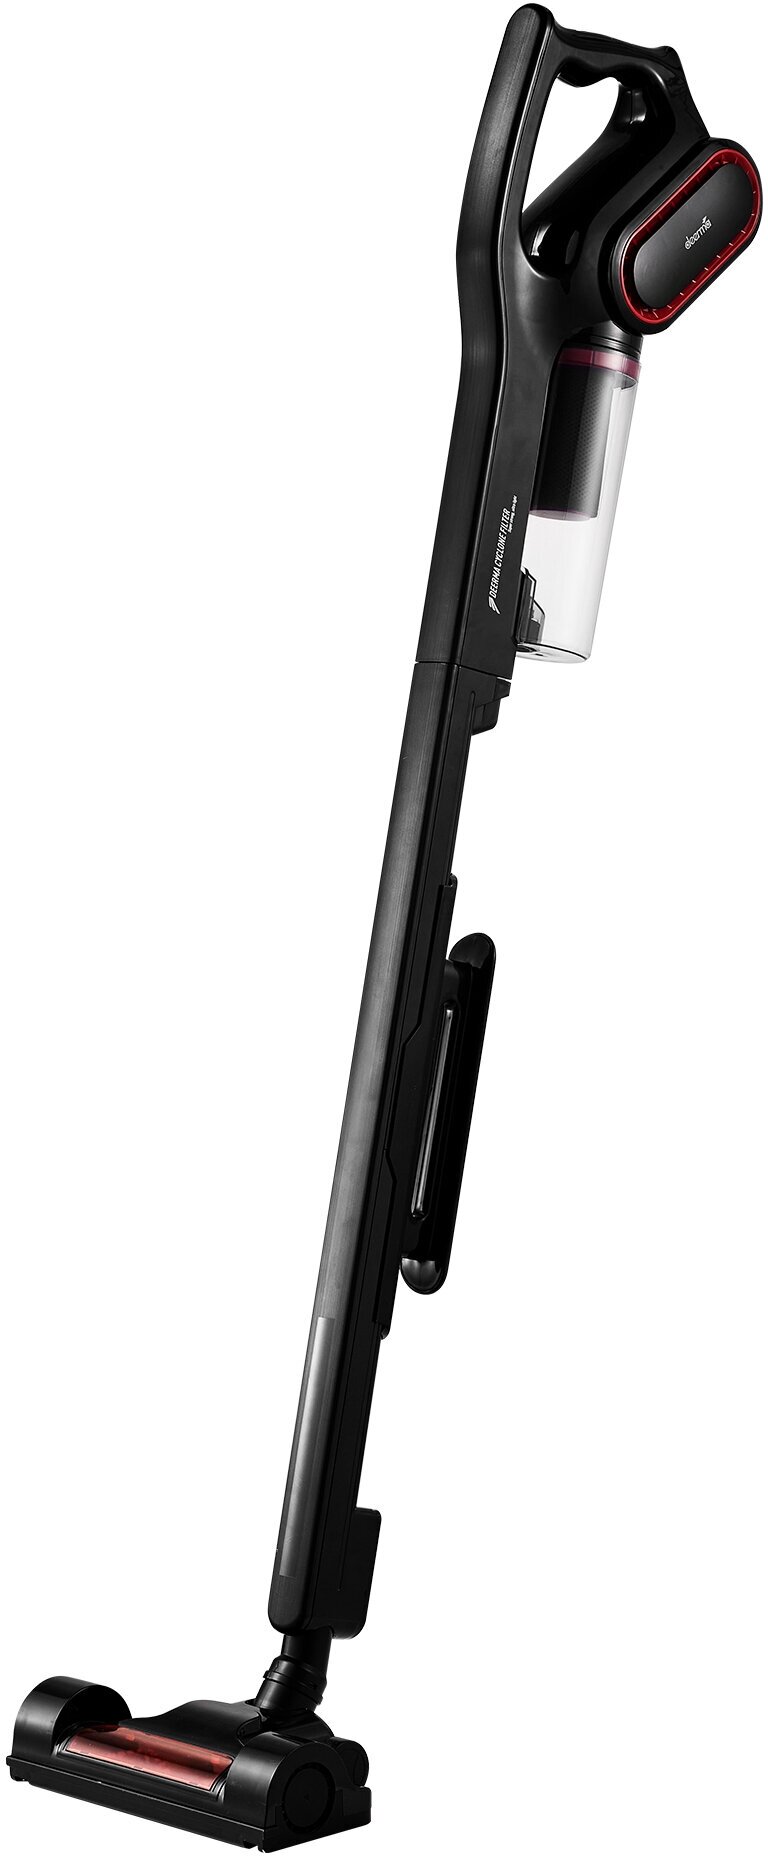 Вертикальный пылесос Deerma DX700 Pro, 250 Вт, черный (DX700 Pro)